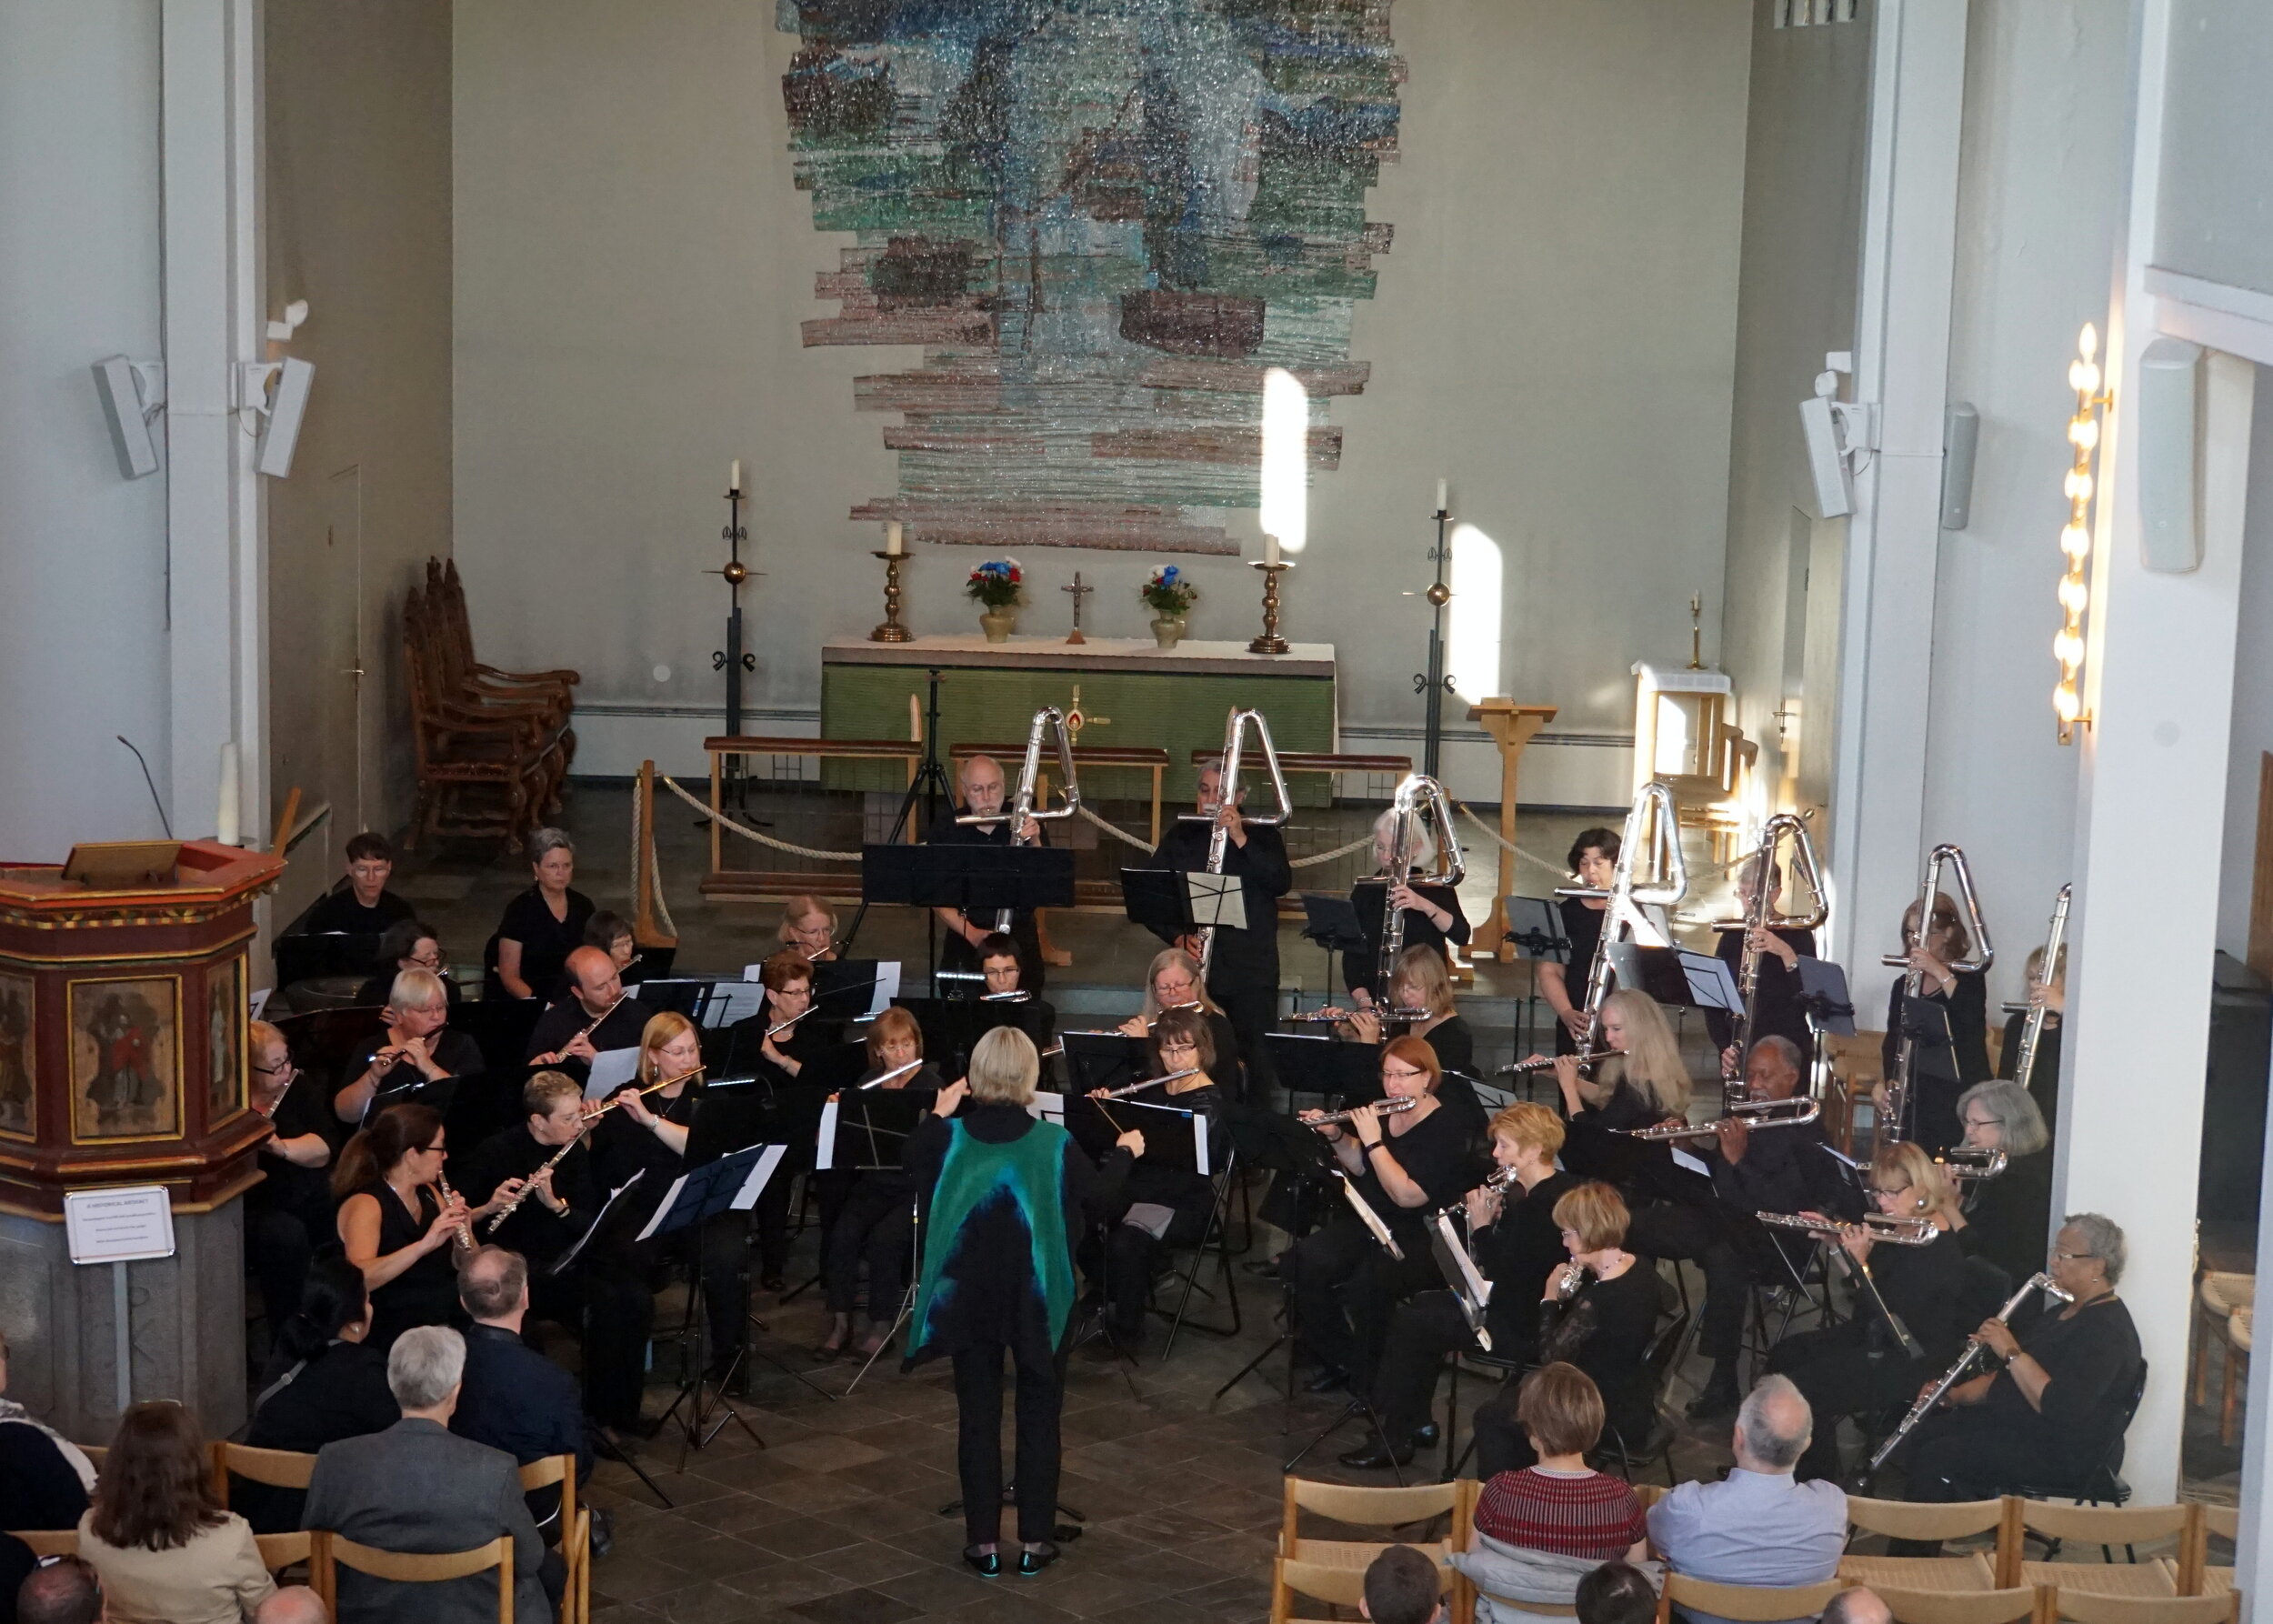 Metropolitan Flute Orchestra performing in Skalholt Cathedral in Skalholt.